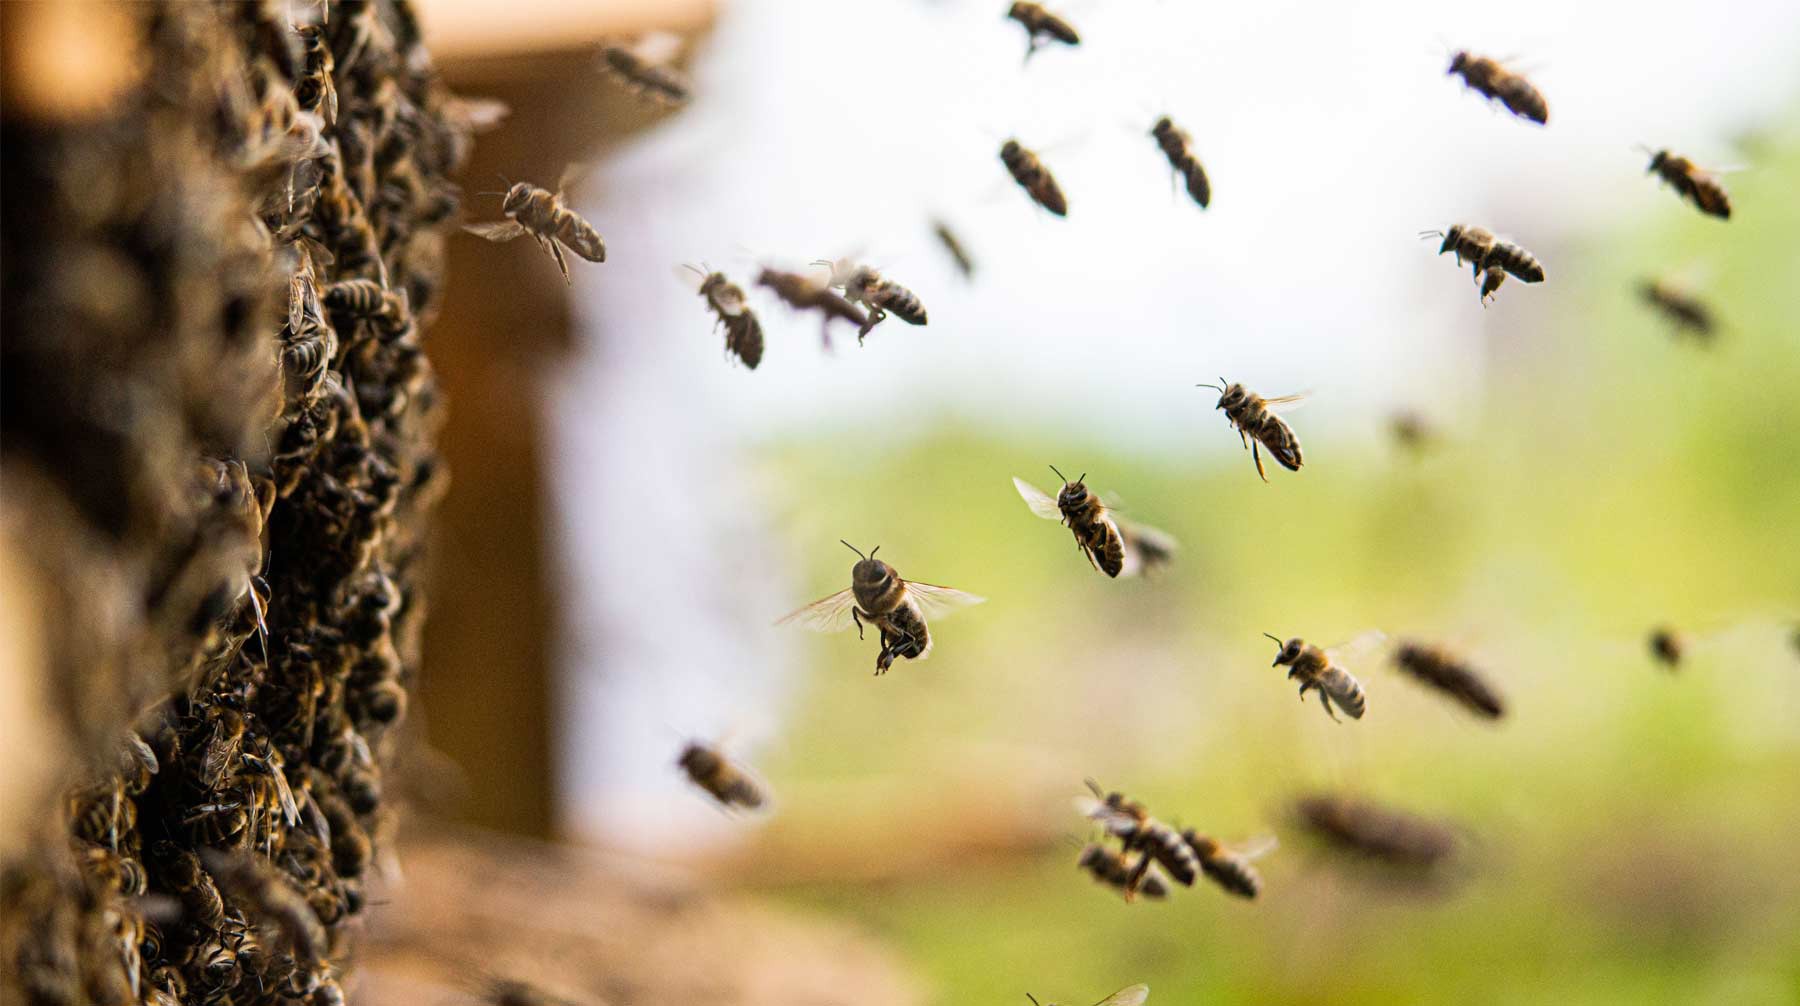 Dailystorm - Случаи массовой гибели пчел зафиксировали в 30 регионах России